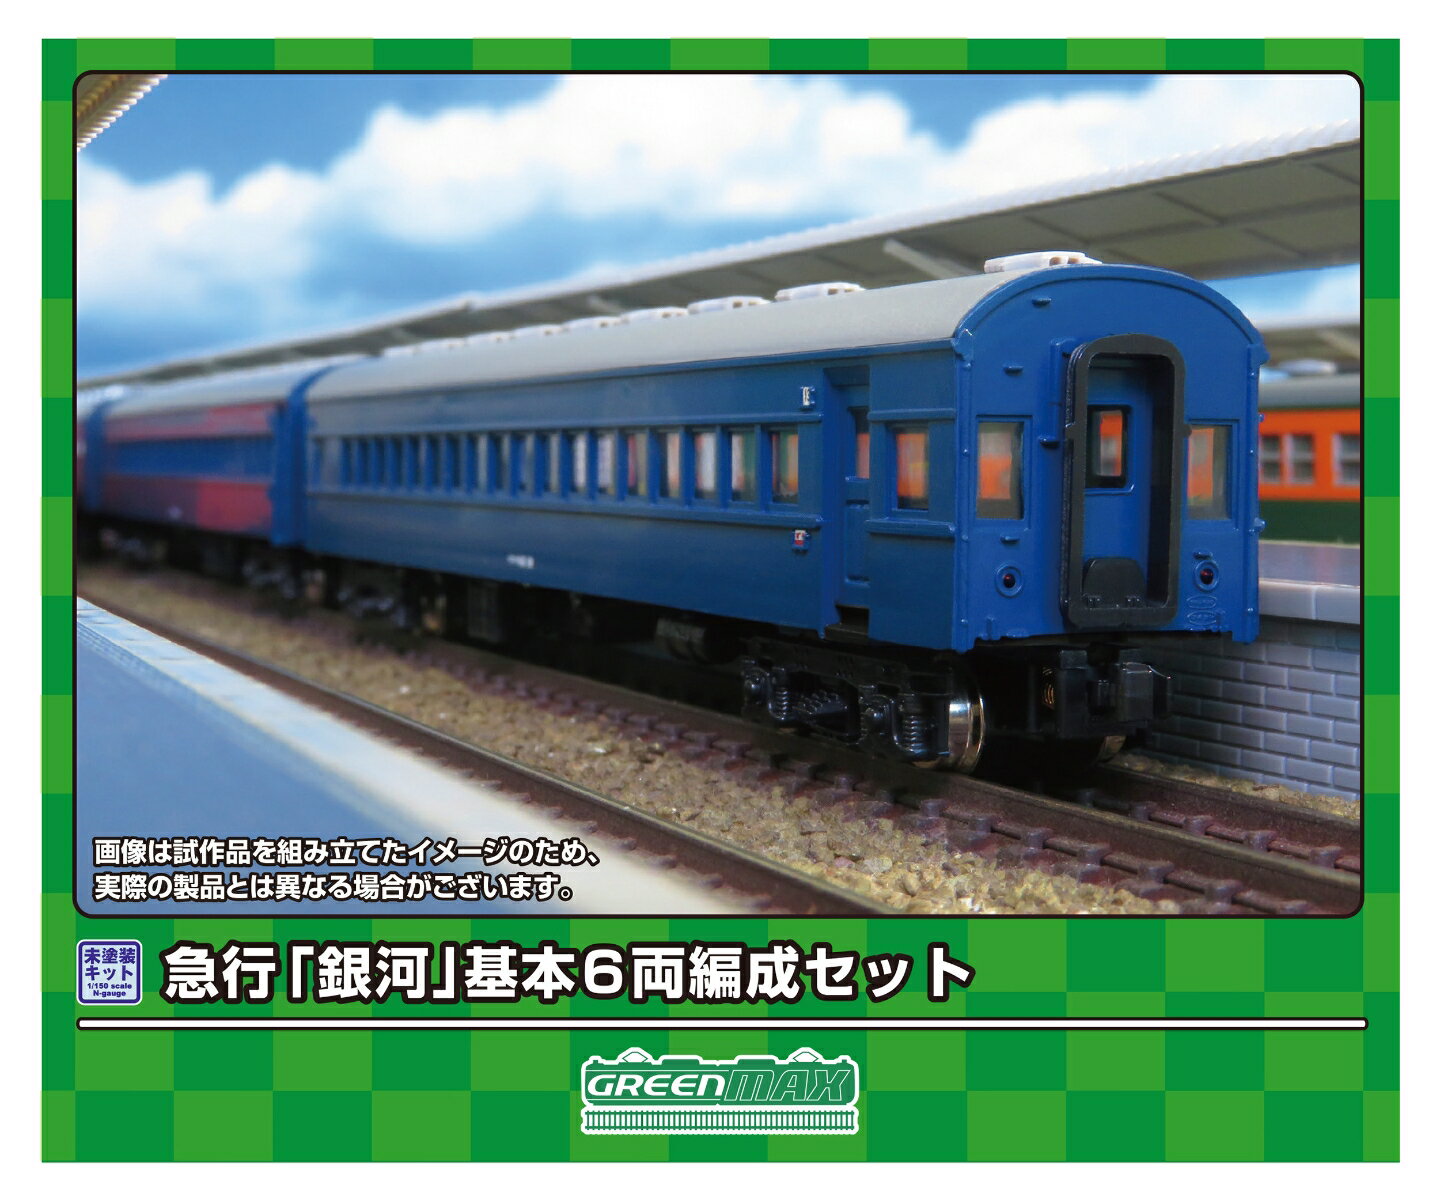 【実車について】	
急行「銀河」は、東海道本線の東京?大阪間で運行された夜行列車です。
1949（昭和24）年に東京?神戸間で運行された15・16列車に，「銀河」の愛称を付けて運転を開始したのが始まりで、1956（昭和31）年には三等寝台車を連結し、1976（昭和51）年に20系客車に置き換えられるまでは10系客車と43系客車が使用されました。
10系客車と43系客車が使用された時代では全区間、EF58形による牽引で運行されました。

【商品セット構成】	
・ボディ（グレー成形）
・屋根（グレー成形）
・ベンチレーター
・床下機器（黒成形）
・幌
・塩ビ板
・ウエイト
・ステッカー
・組立説明書

【商品の特徴】	
■急行「銀河」イメージしたアソートセット
■行先表示板、愛称板などを収録した新規製作の専用ステッカーが付属
■ボディ・屋根グレー成形、床下機器は黒成形
■急行「銀河」用の行先表示、愛称札、号車札などを収録したステッカー(新規製作)が基本セットと増結セットに付属
■別売りの＜626＞増結6両セットと発売済みの単品キットを組み合わせると、実車と同じ編成を再現可能
※本製品に台車、車両マークは付属しません。
※本製品は未塗装キットのため、組み立て、塗装が必要です。
※商品の仕様は一部実車と異なる場合があります。【対象年齢】：15歳以上